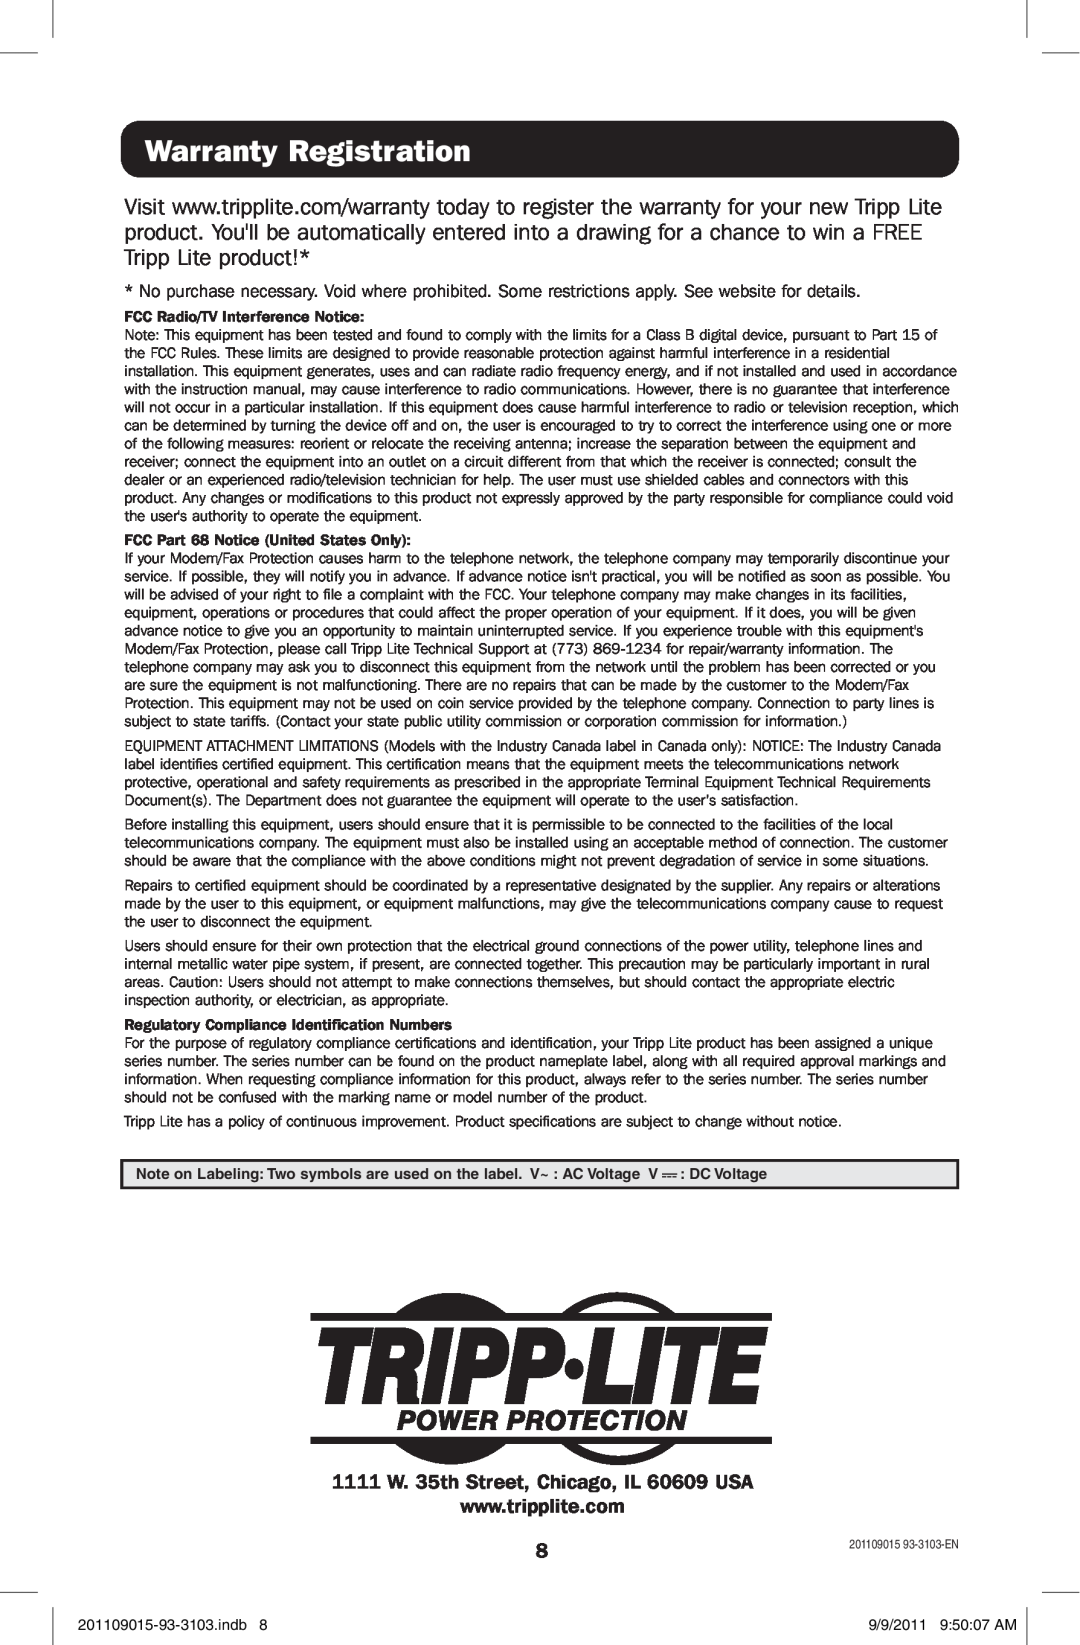 Tripp Lite OMNIVS1500 owner manual Warranty Registration 